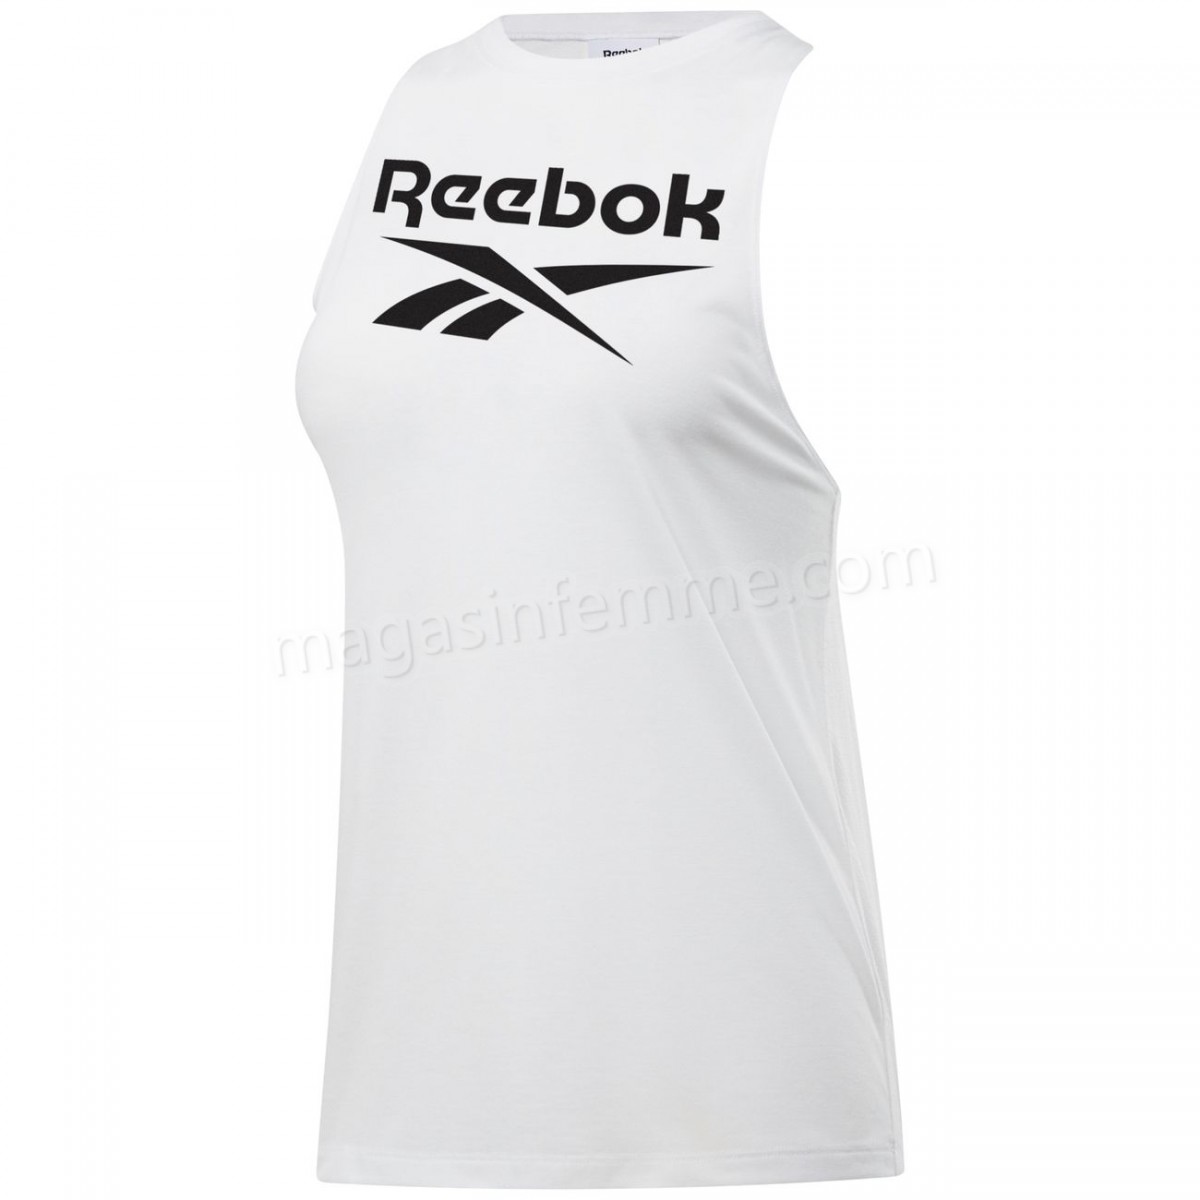 Reebok-Fitness femme REEBOK Débardeur femme Reebok Workout Ready Supremium BL en solde - -0